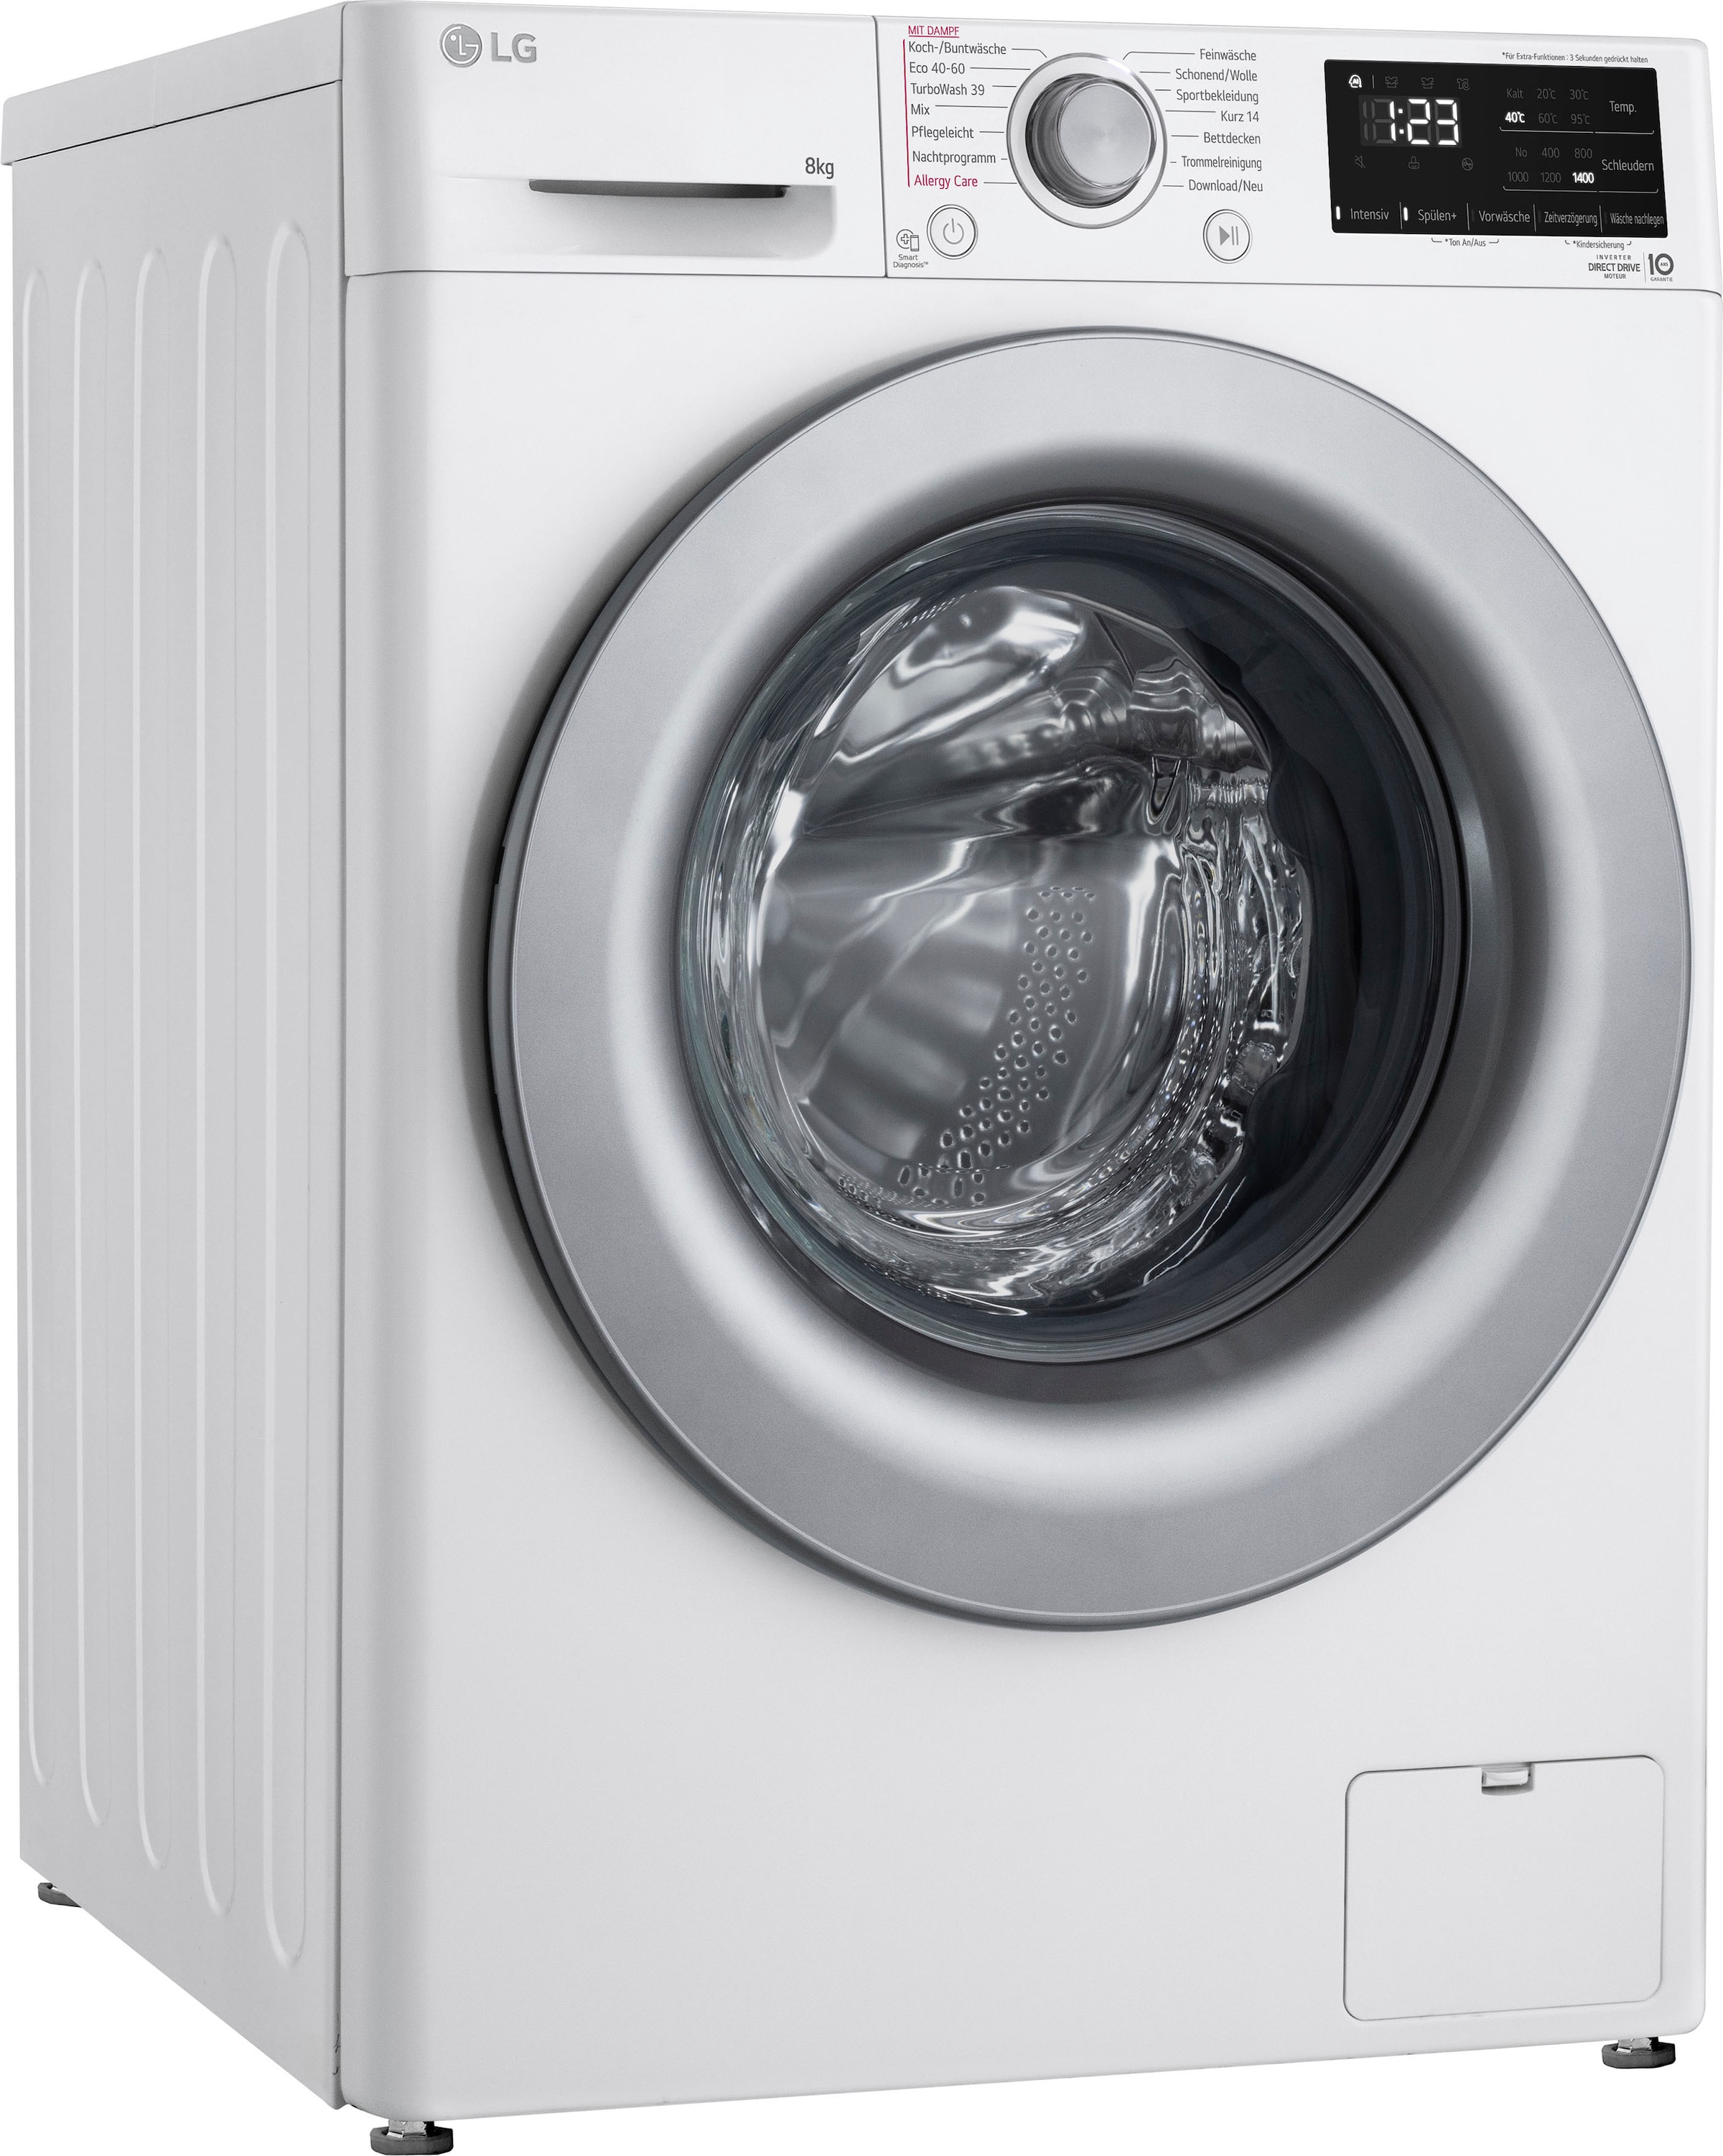 LG Waschmaschine bestellen bei Serie F4WV3284, »F4WV3284«, OTTO 3, 1400 kg, U/min 8